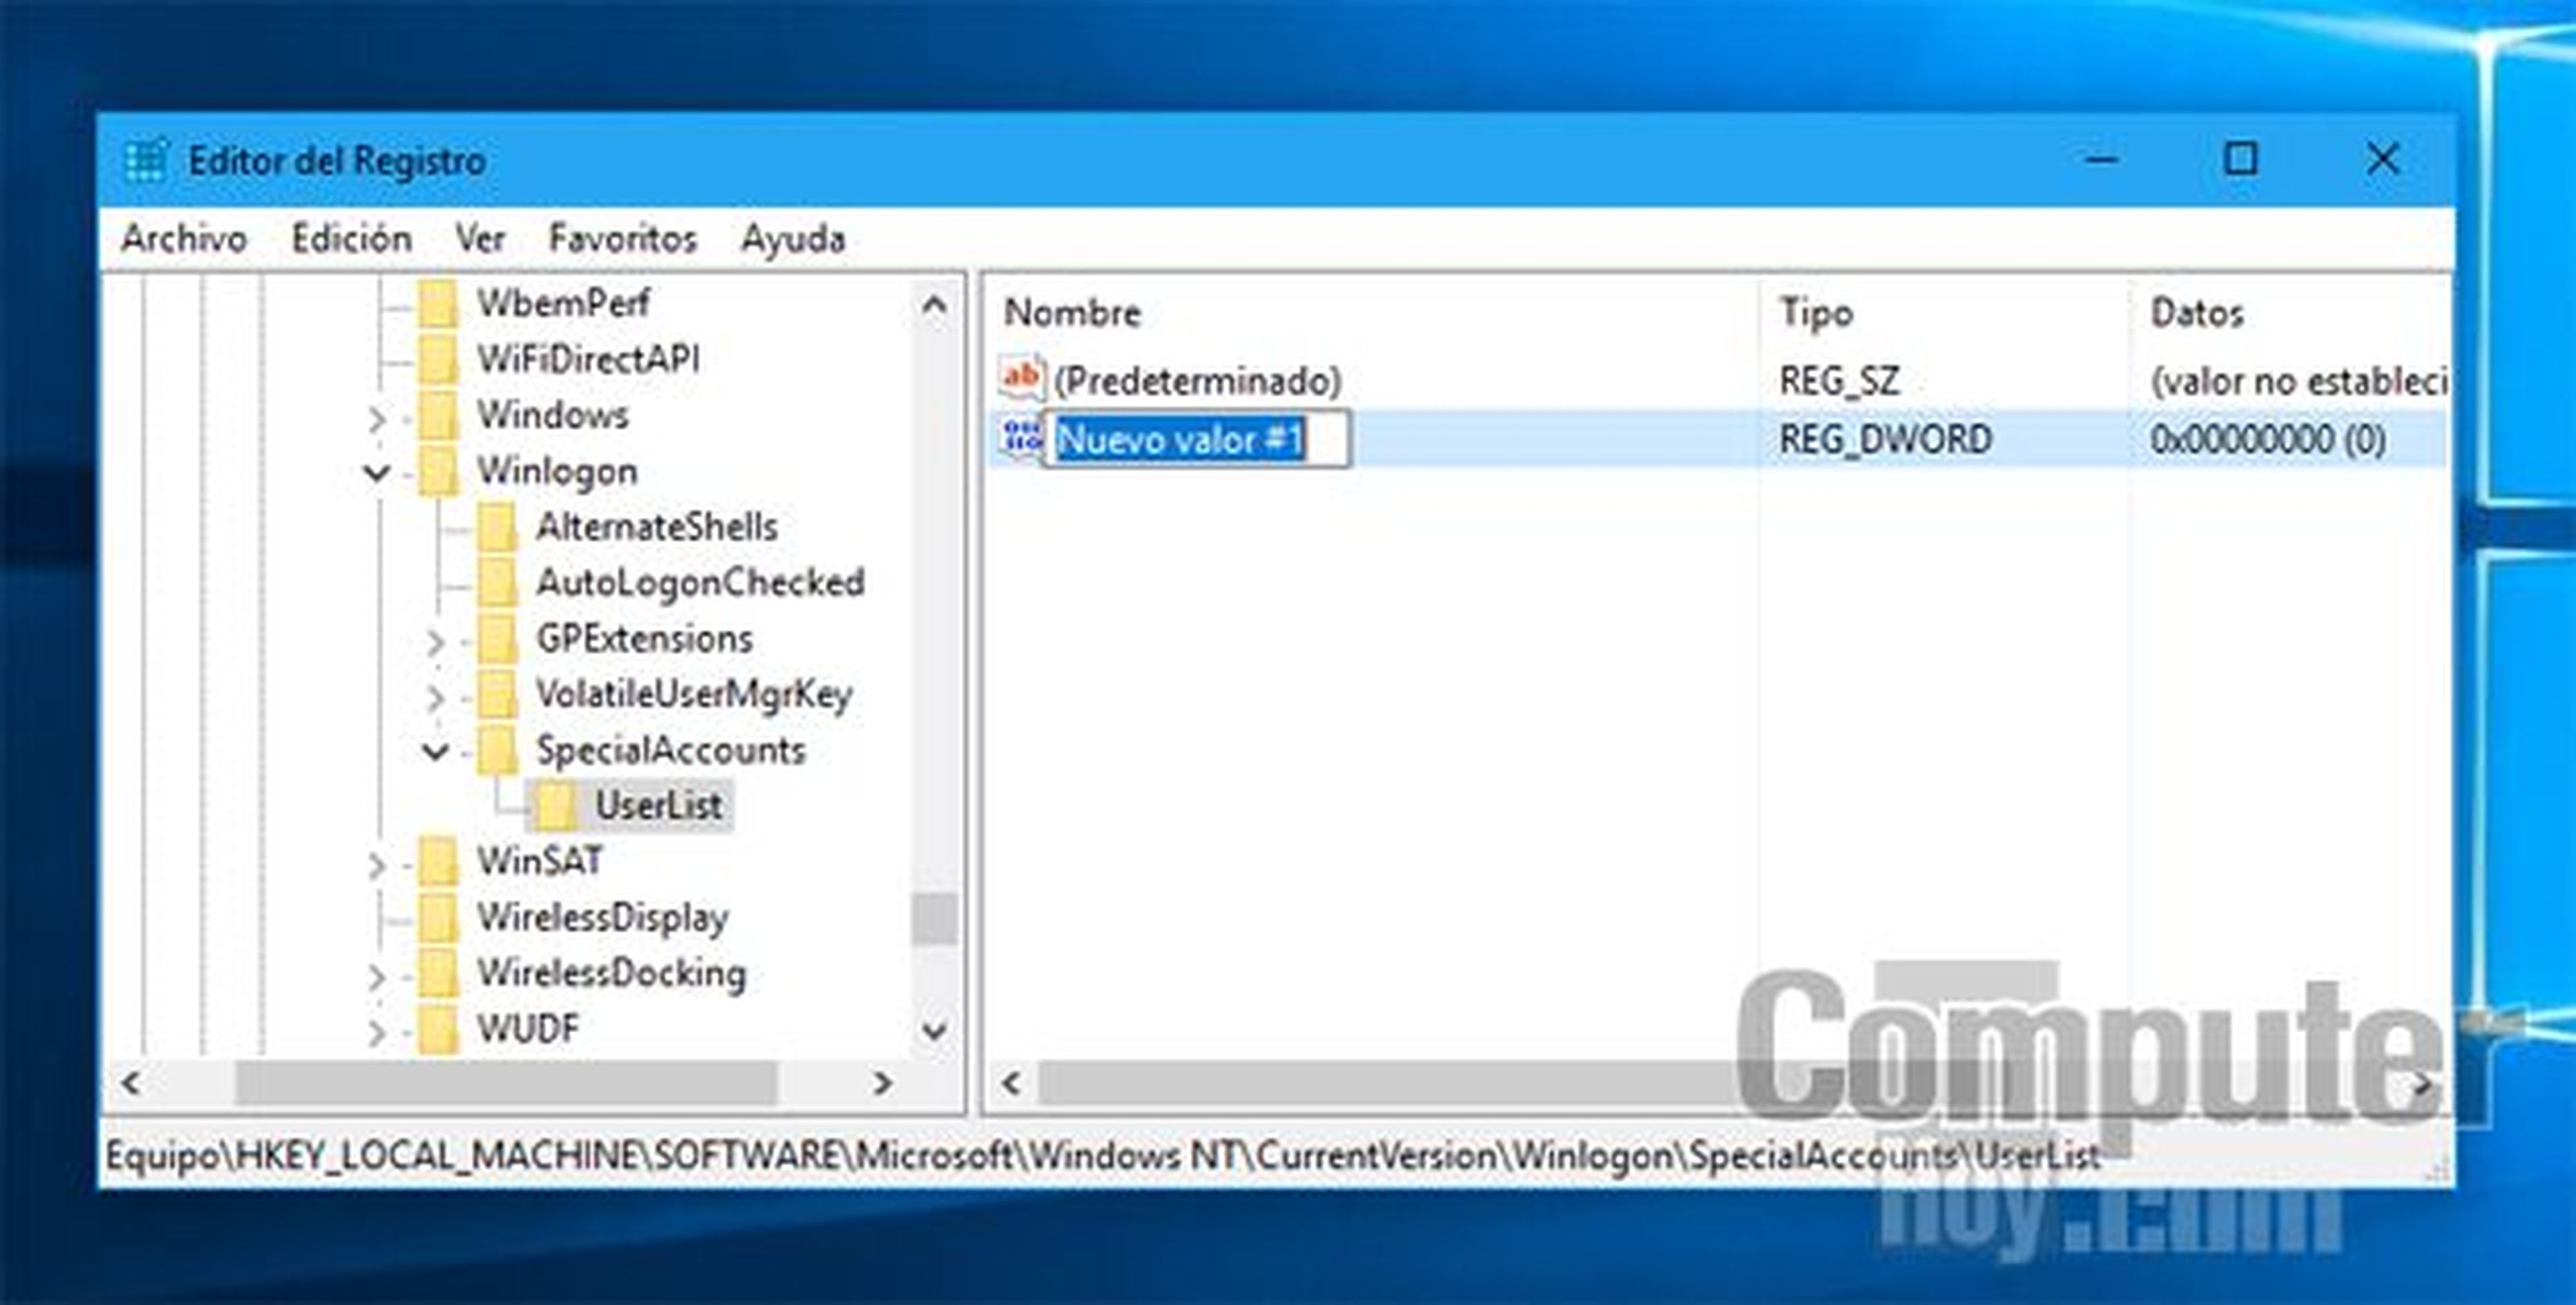 Creacion de nuevas claves en el Editor del Registro de Windows 10